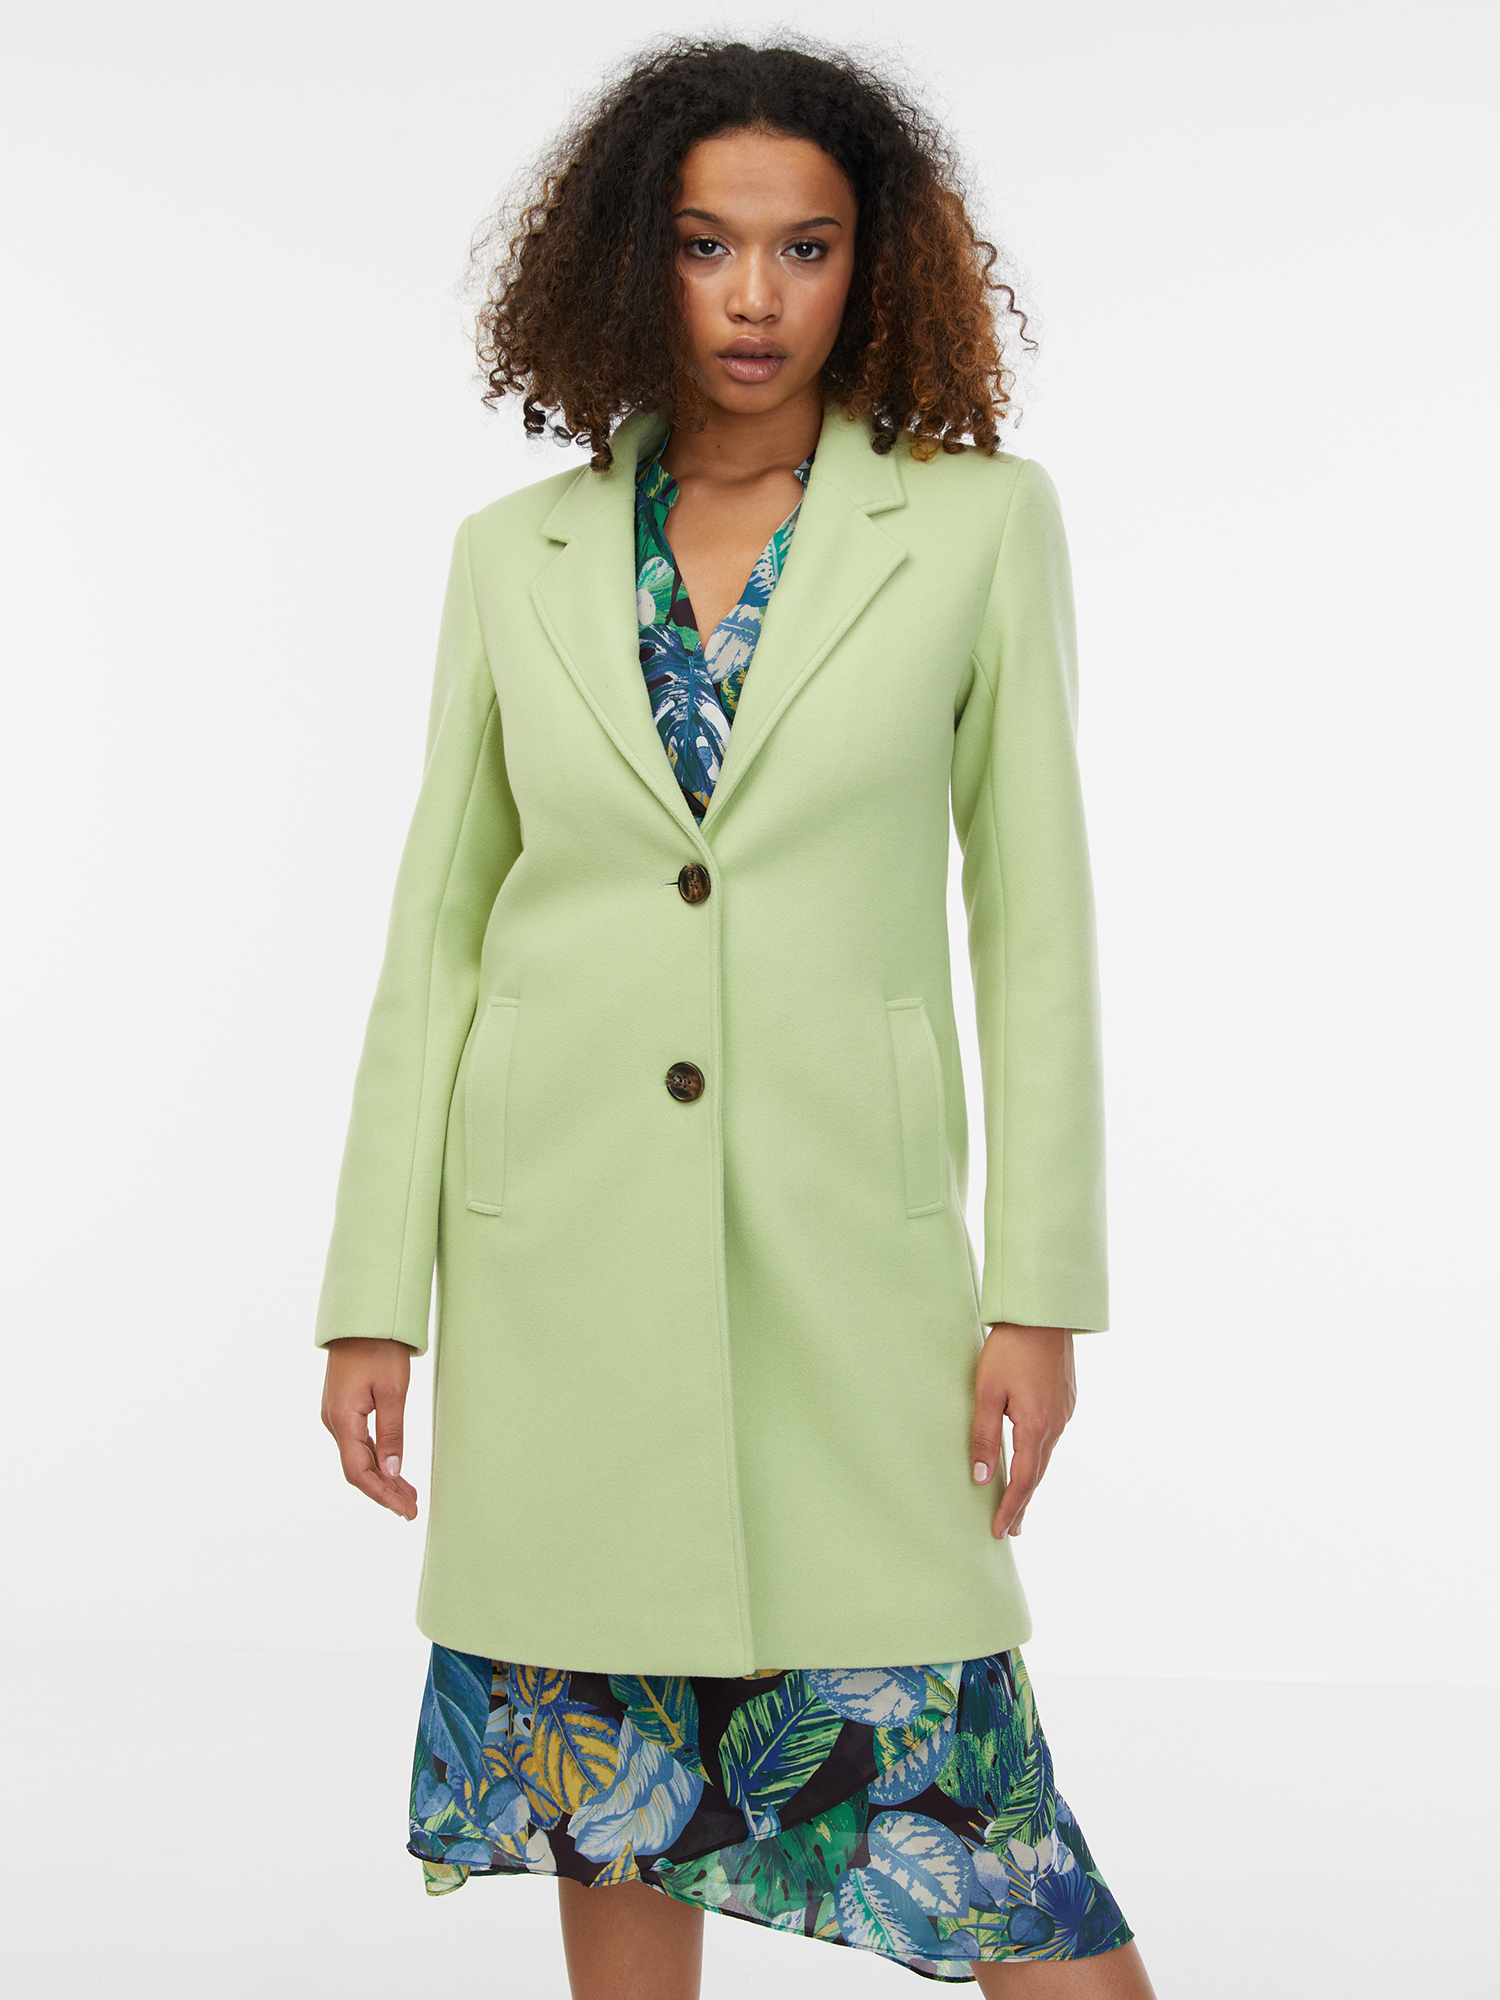 Orsay Light Green Women's Coat - Women